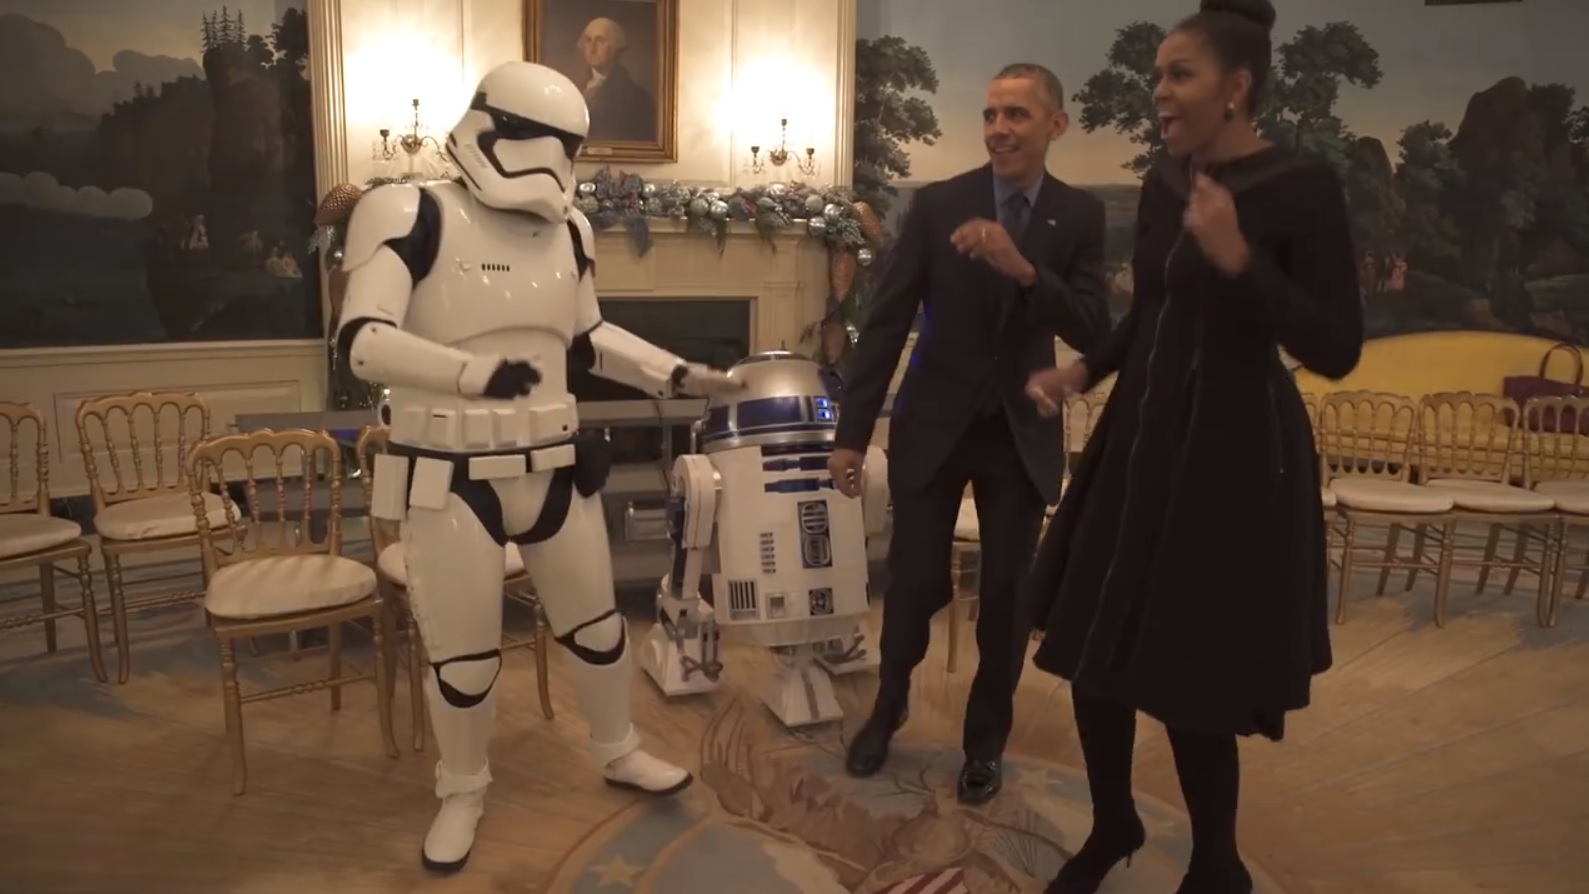 O mais recente vídeo dos Obama está a pôr a internet a dançar [vídeo]